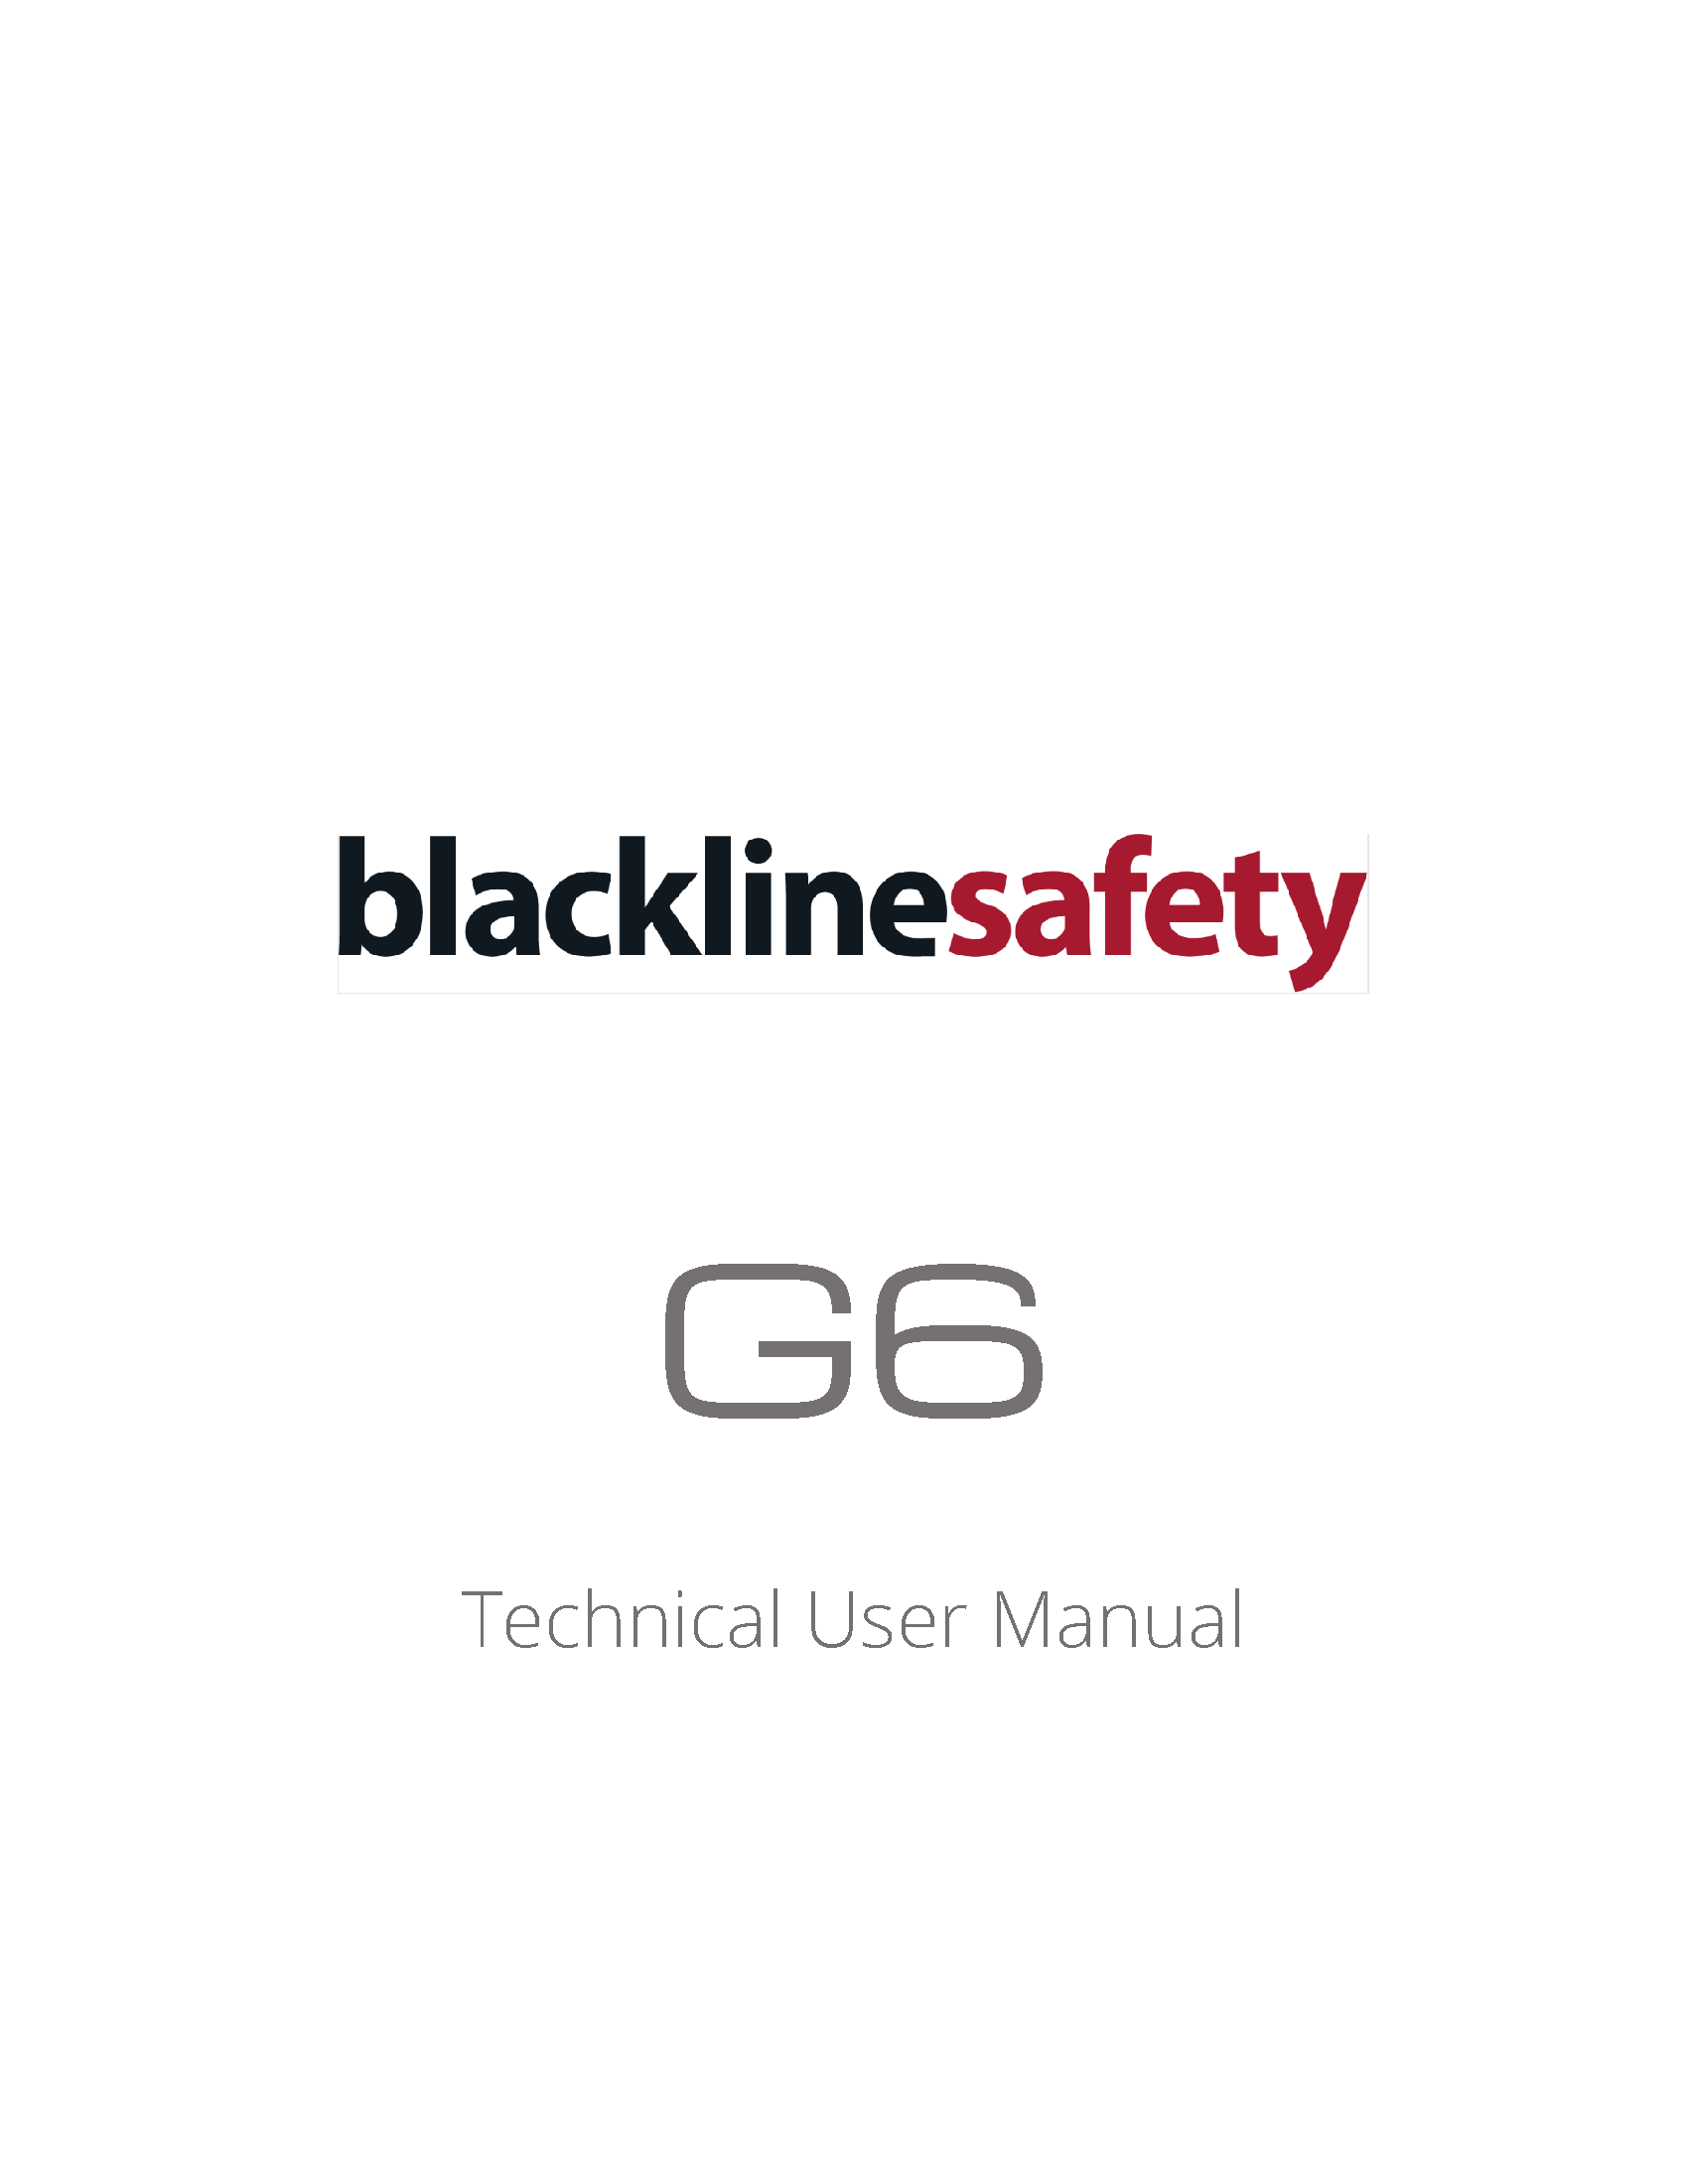 Manuale tecnico per l'utente G6_R1 - IT - Pagina di copertina